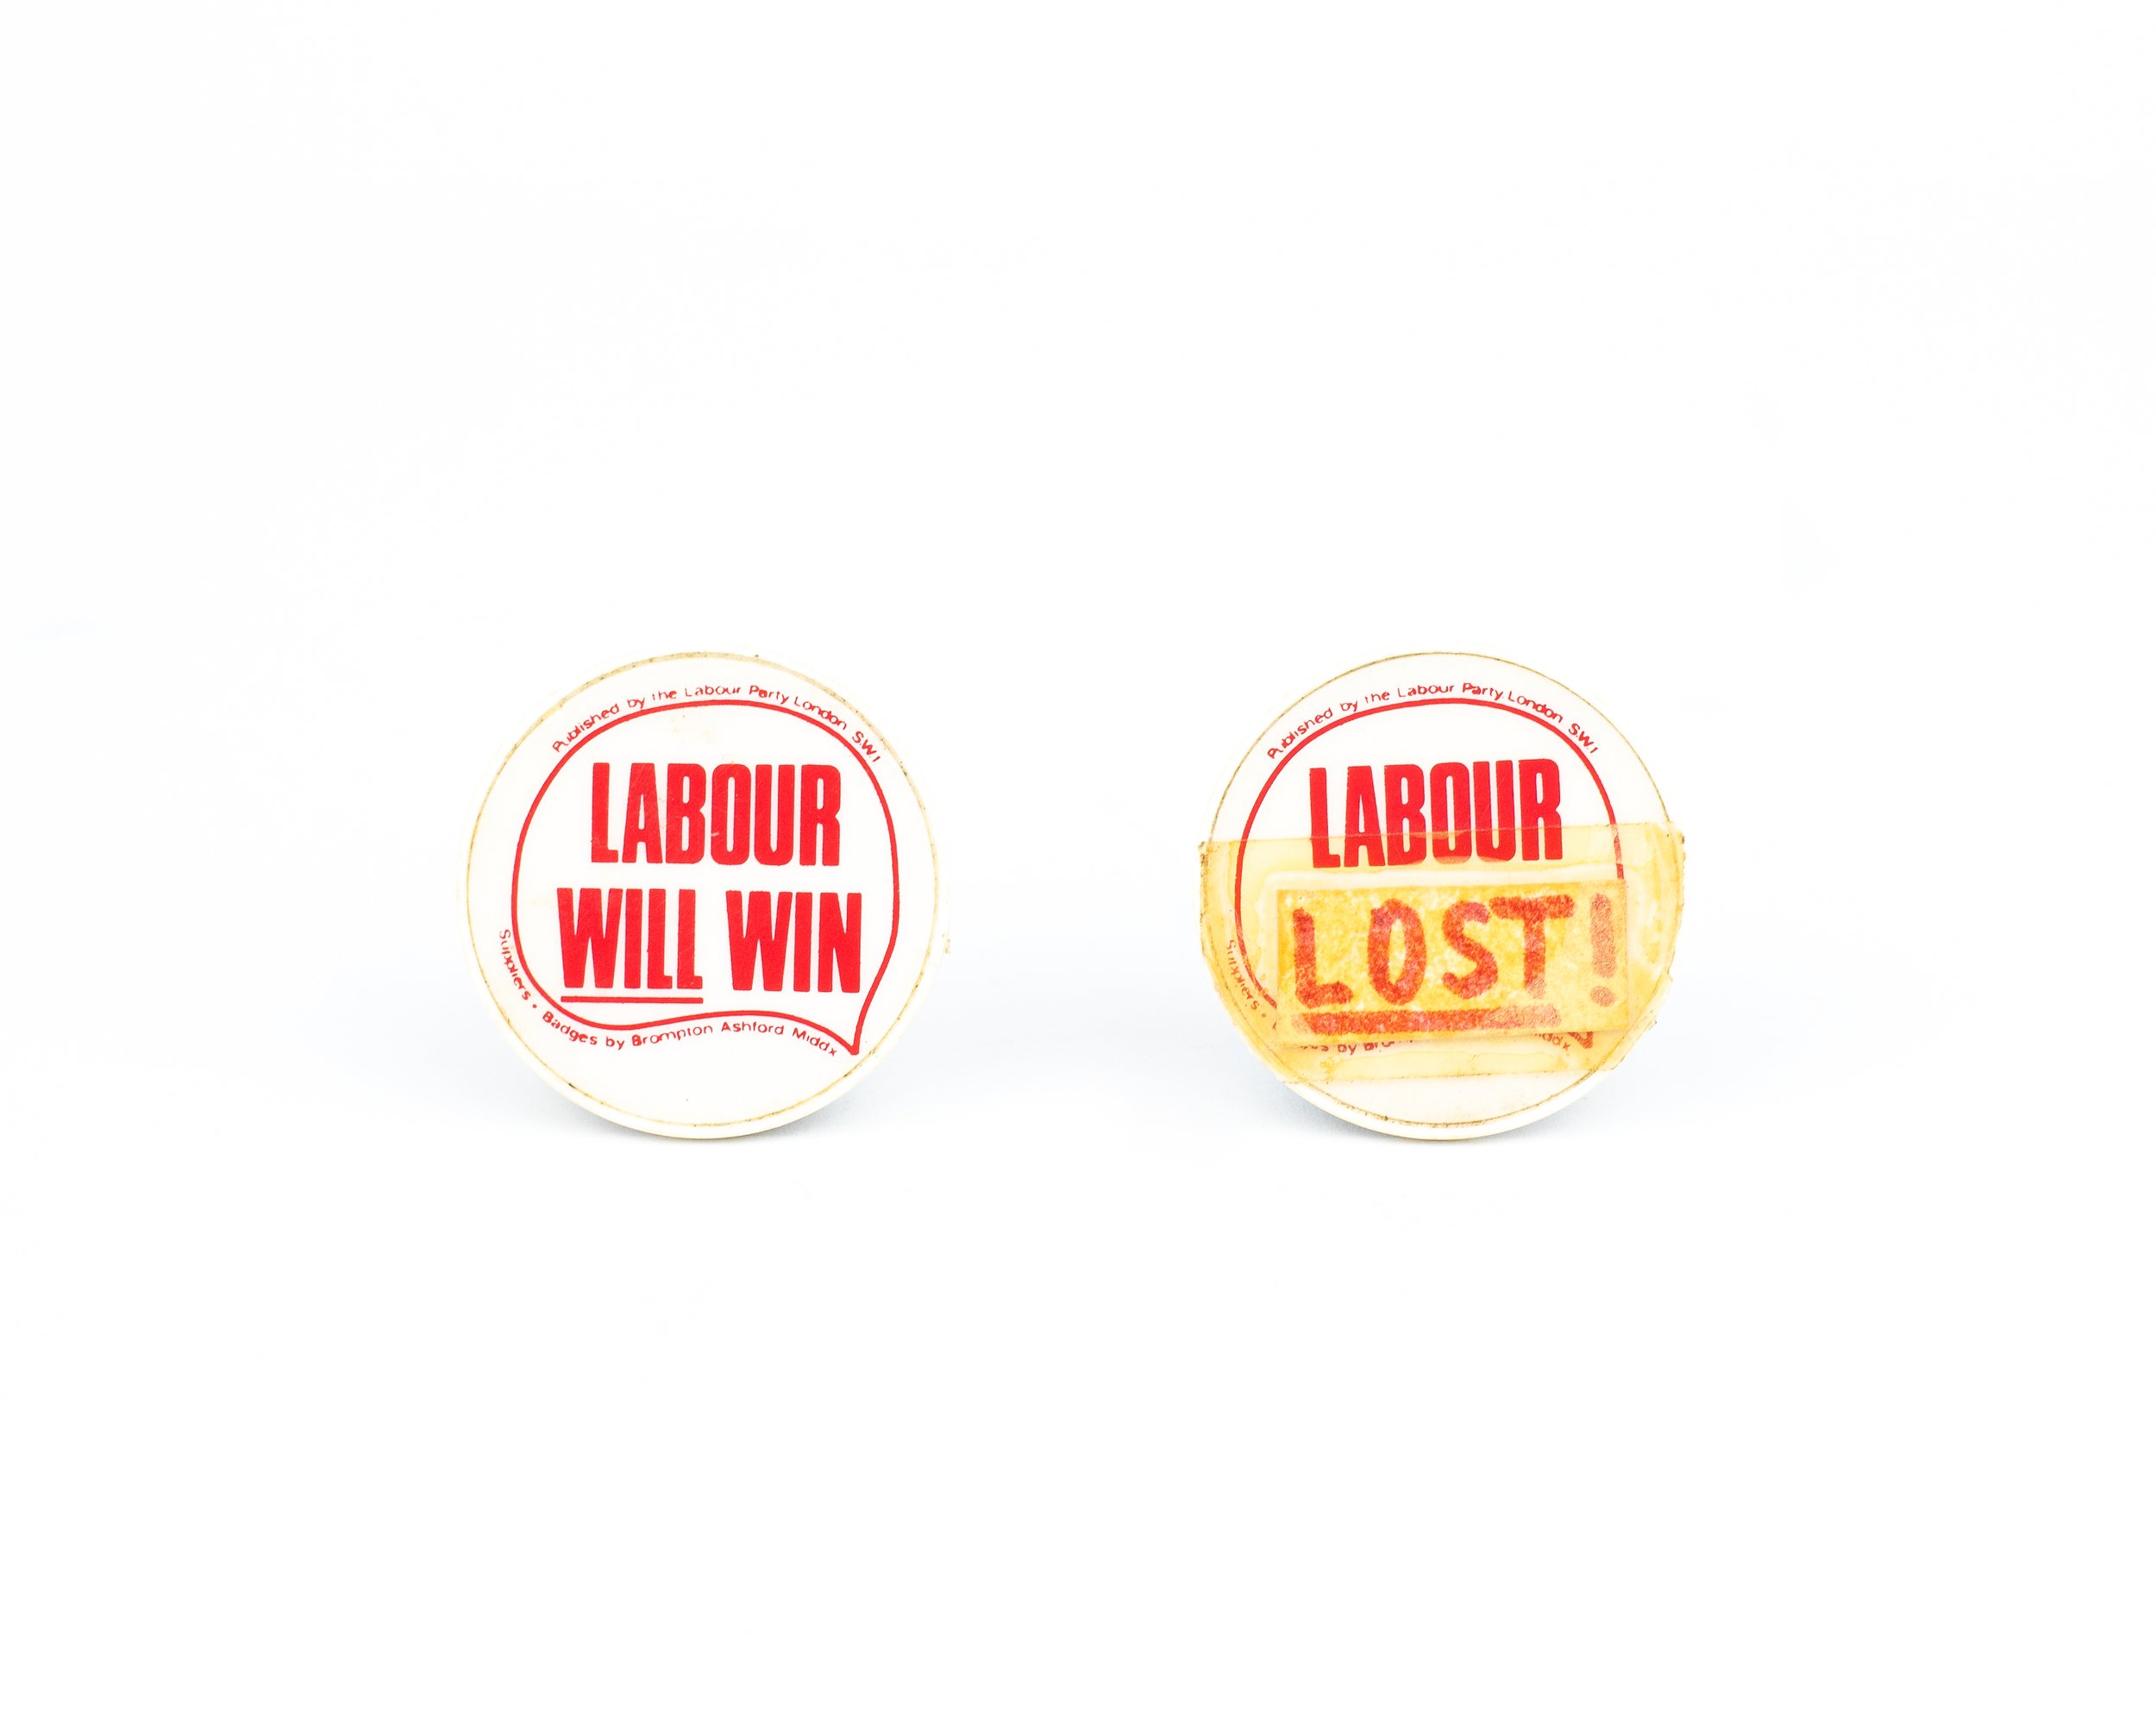  Labour Party badges 